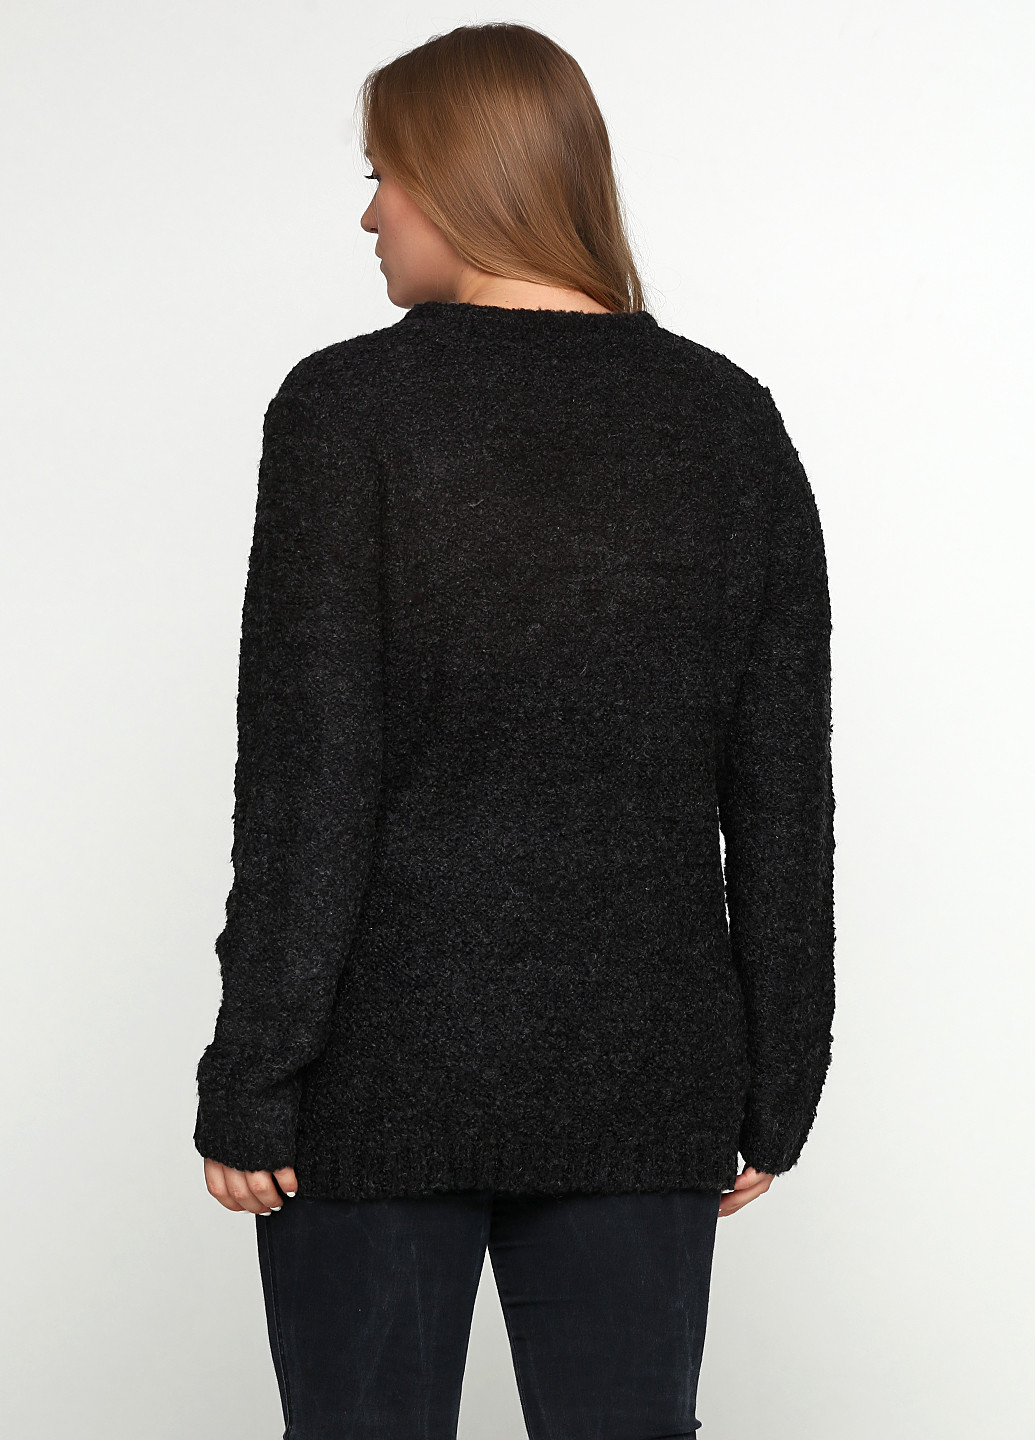 Грифельно-серый демисезонный пуловер пуловер Long Island